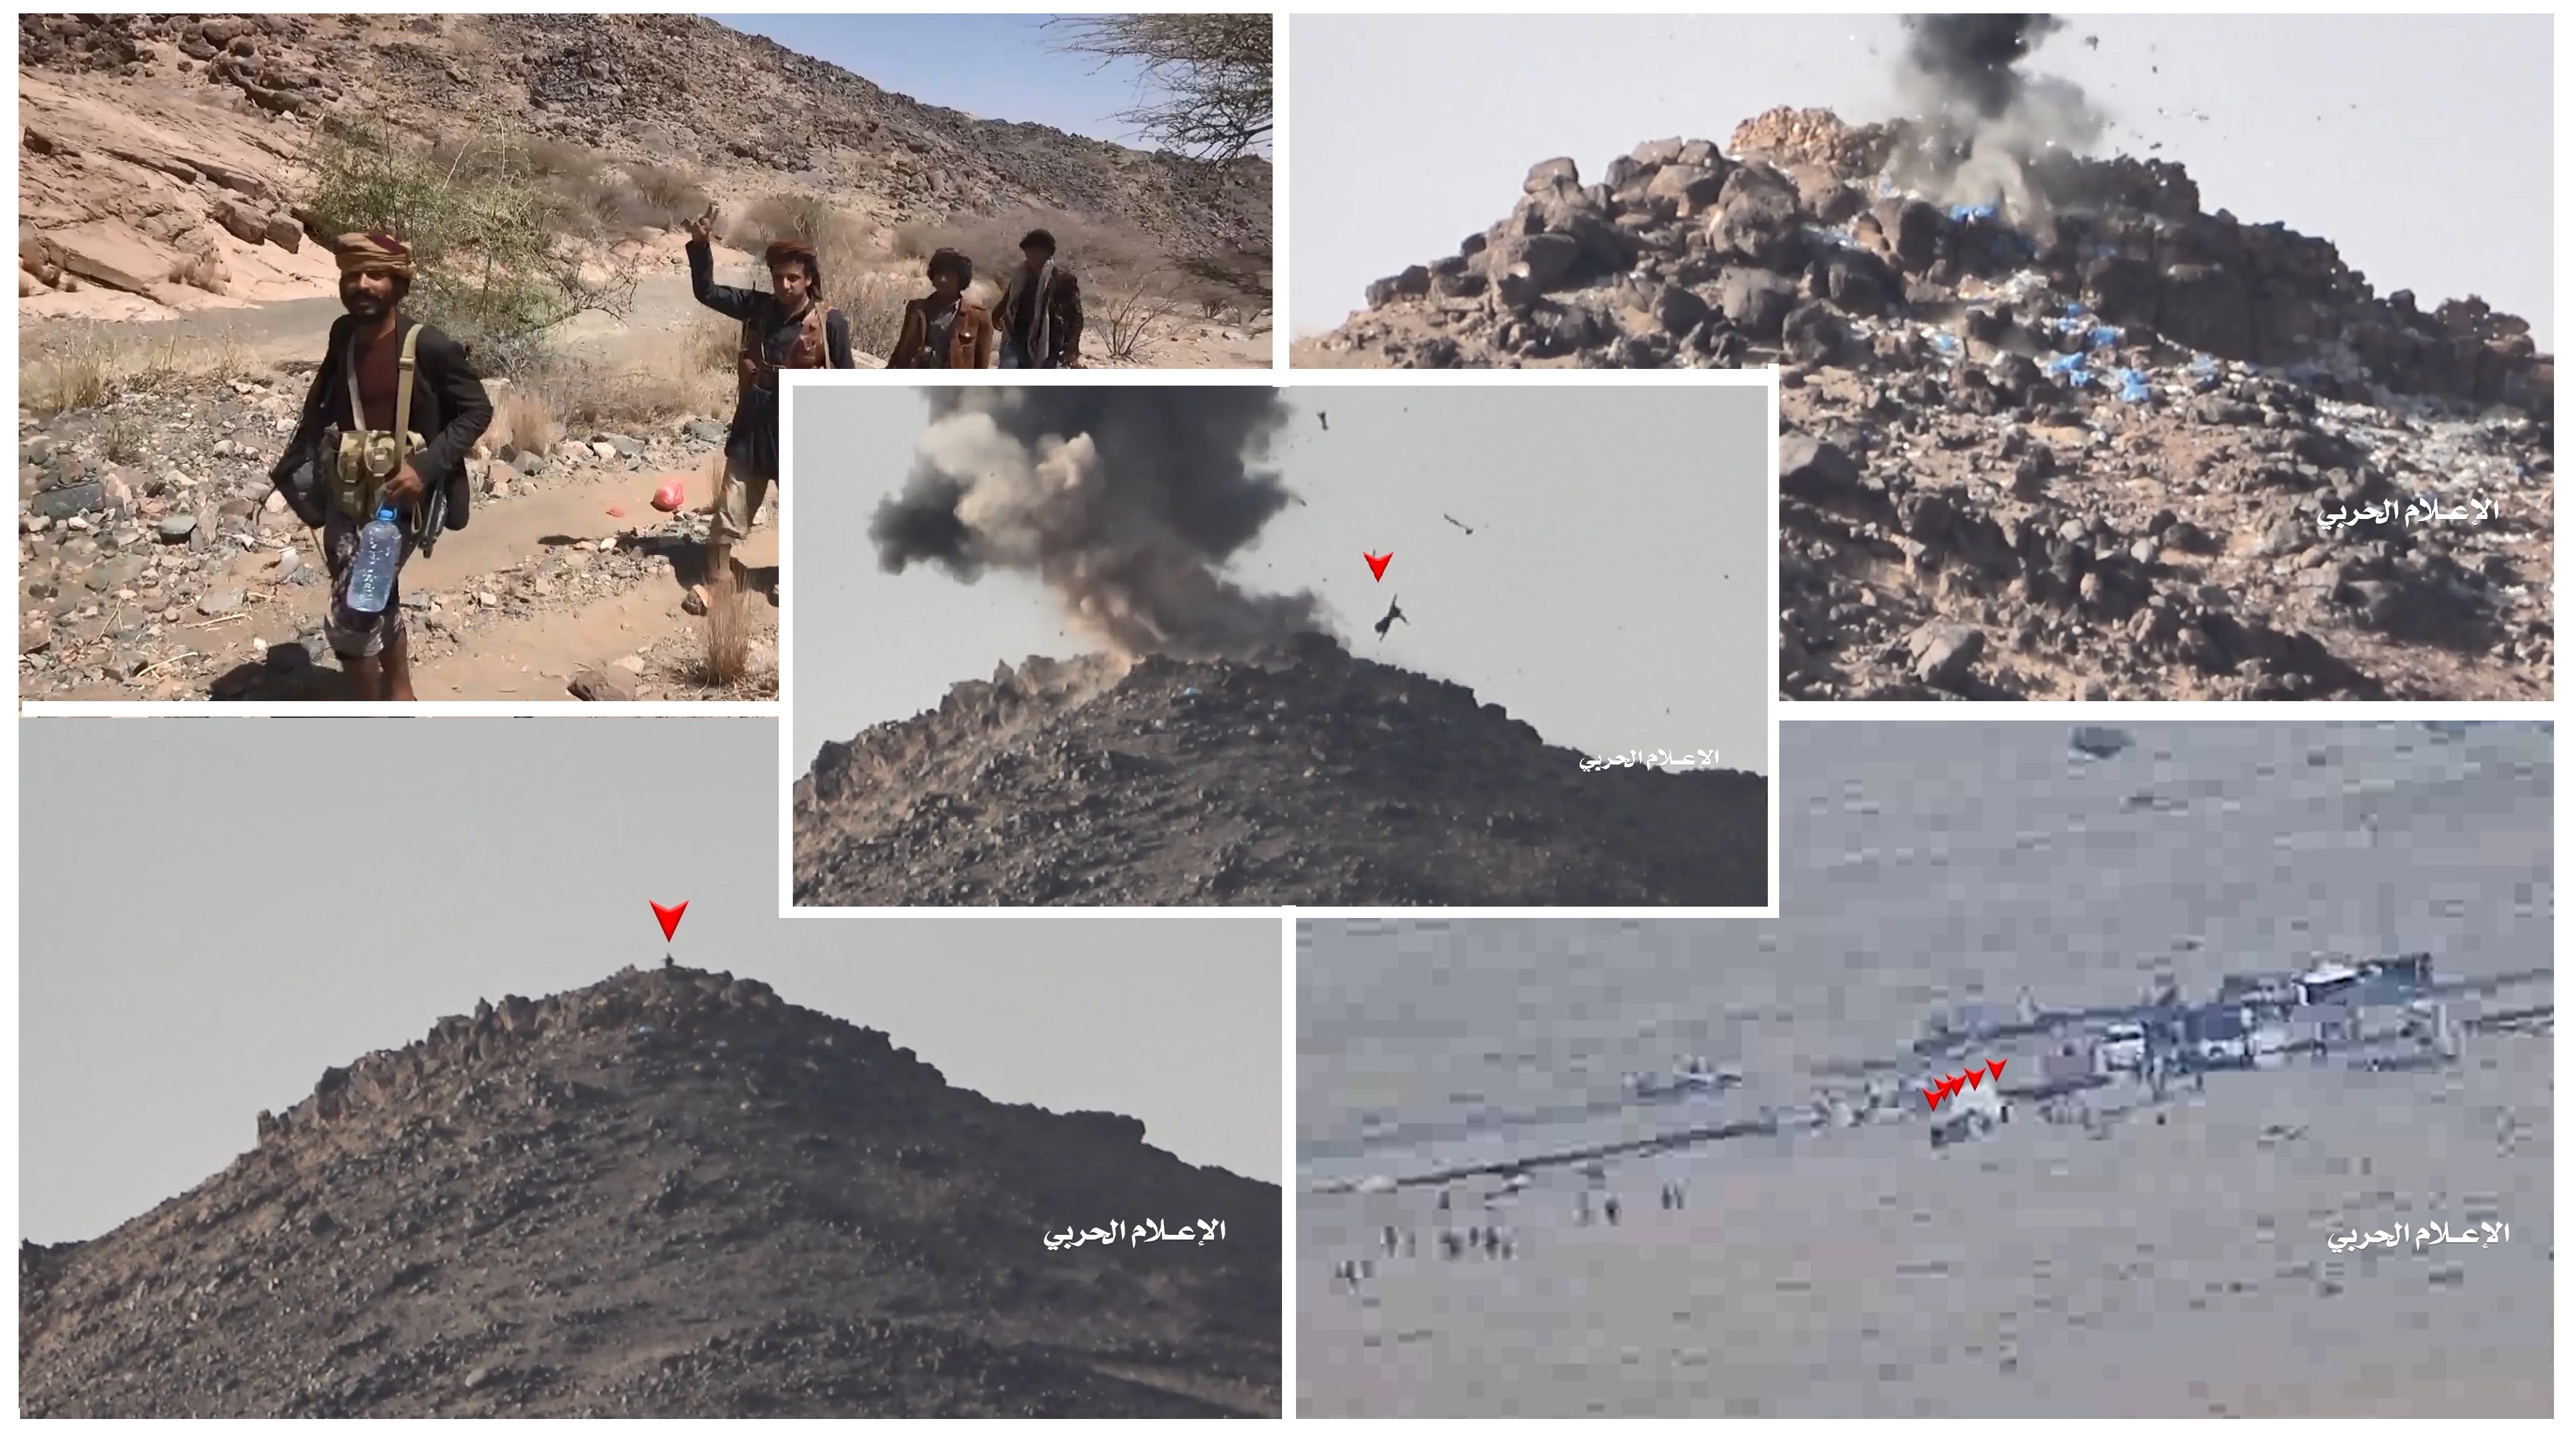 نجران – عملية اغارة على مواقع  ومرتزقة الجيش السعودي في رشاحة الغربية واستهدافهم وتكبيدهم خسائر فادحة